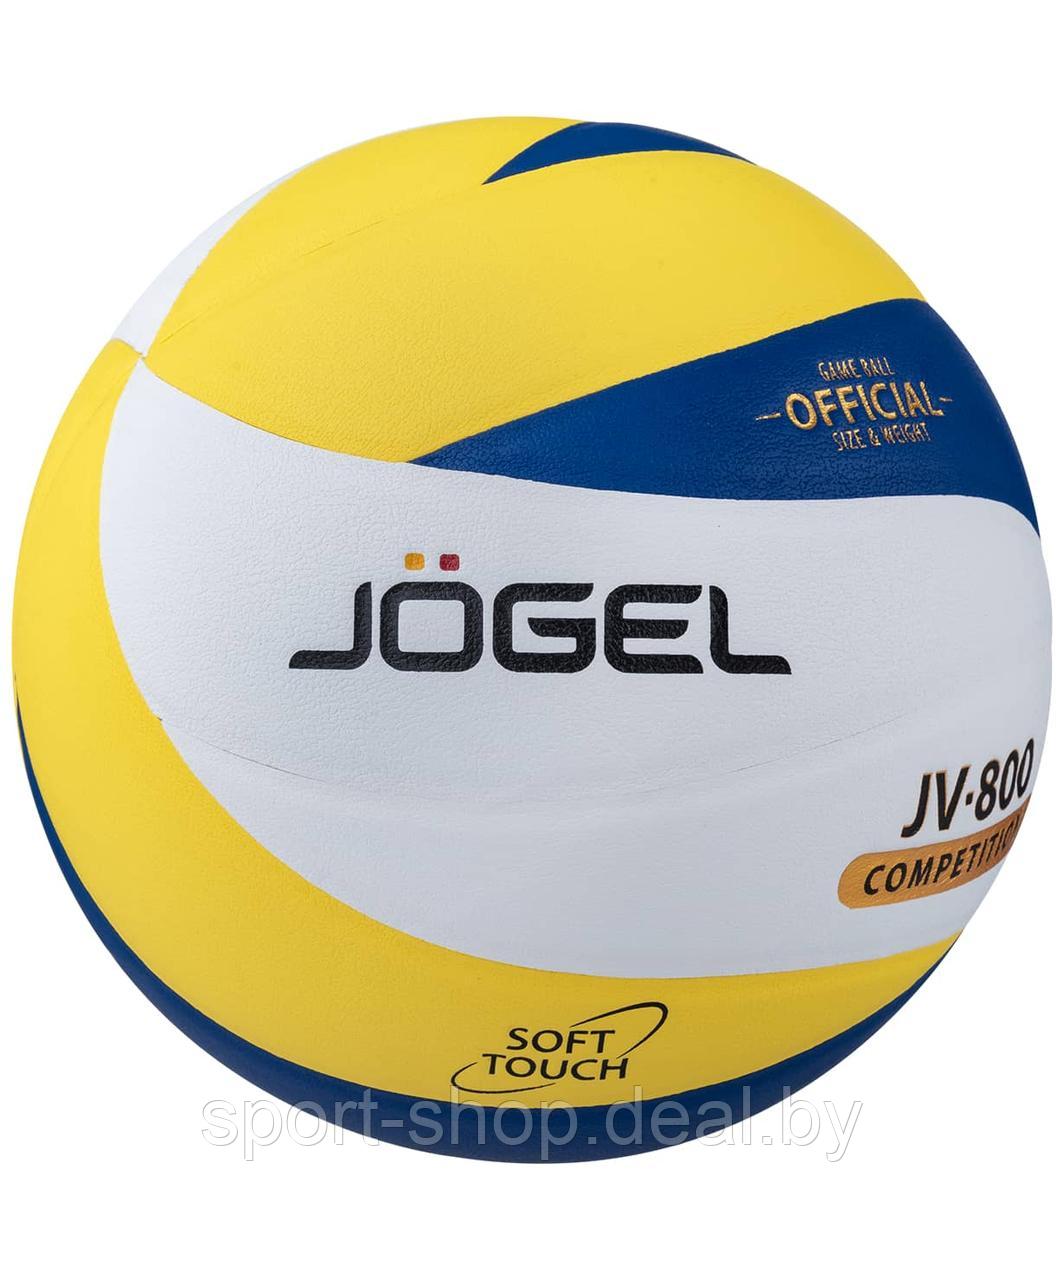 Мяч волейбольный Jogel JV-800